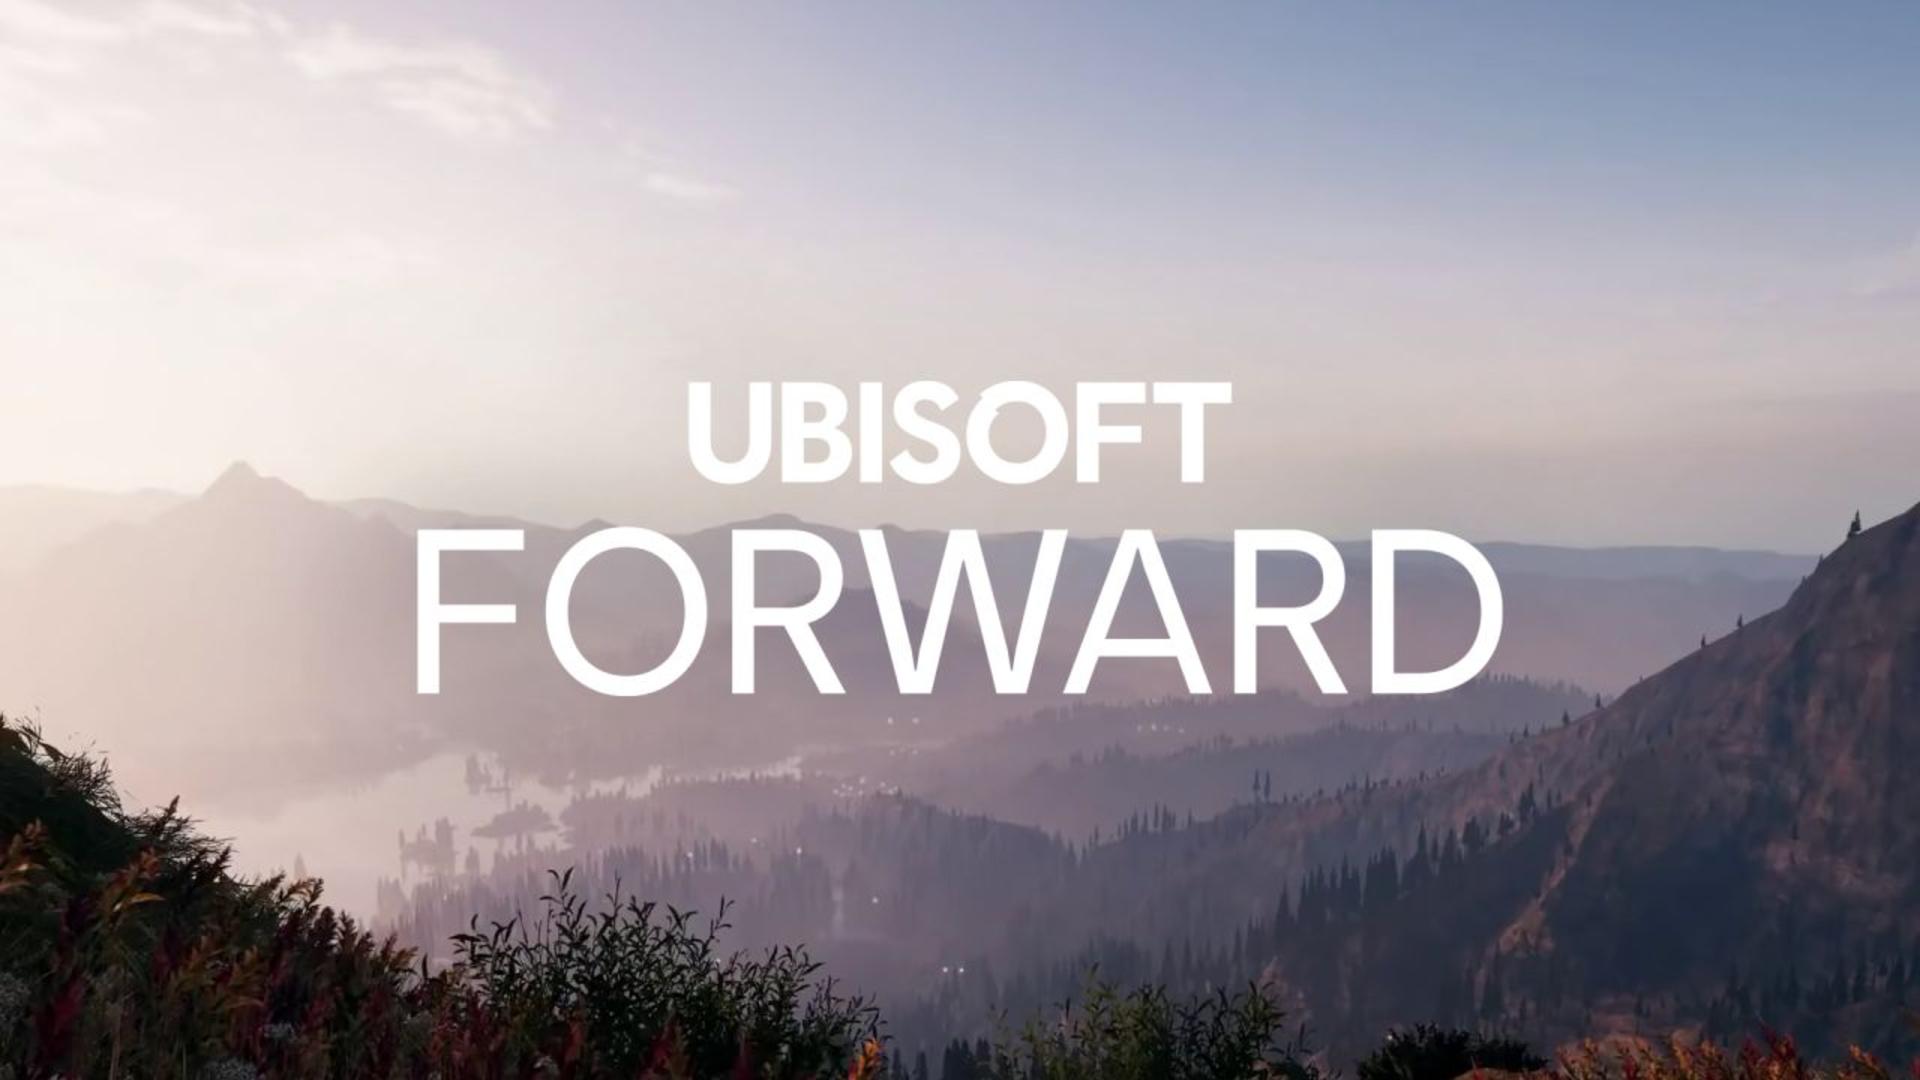 Ubisoft forward será o evento online em julho | f19f21a1 ubisoft forward | eu nunca | ubisoft forward eu nunca